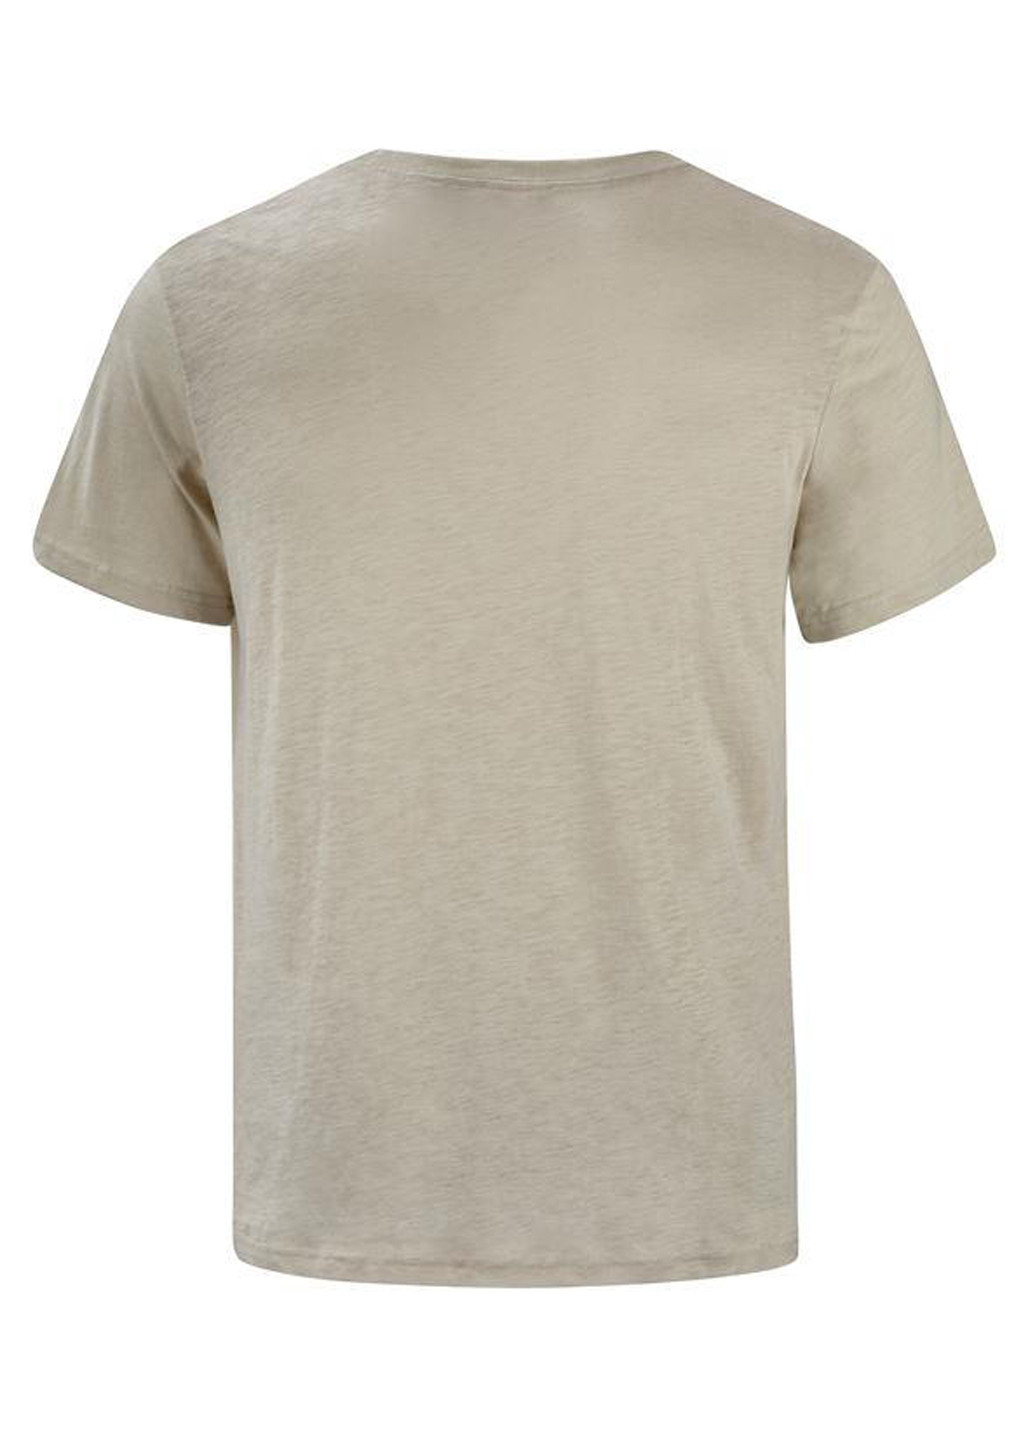 Хаки (оливковая) футболка Lee Cooper